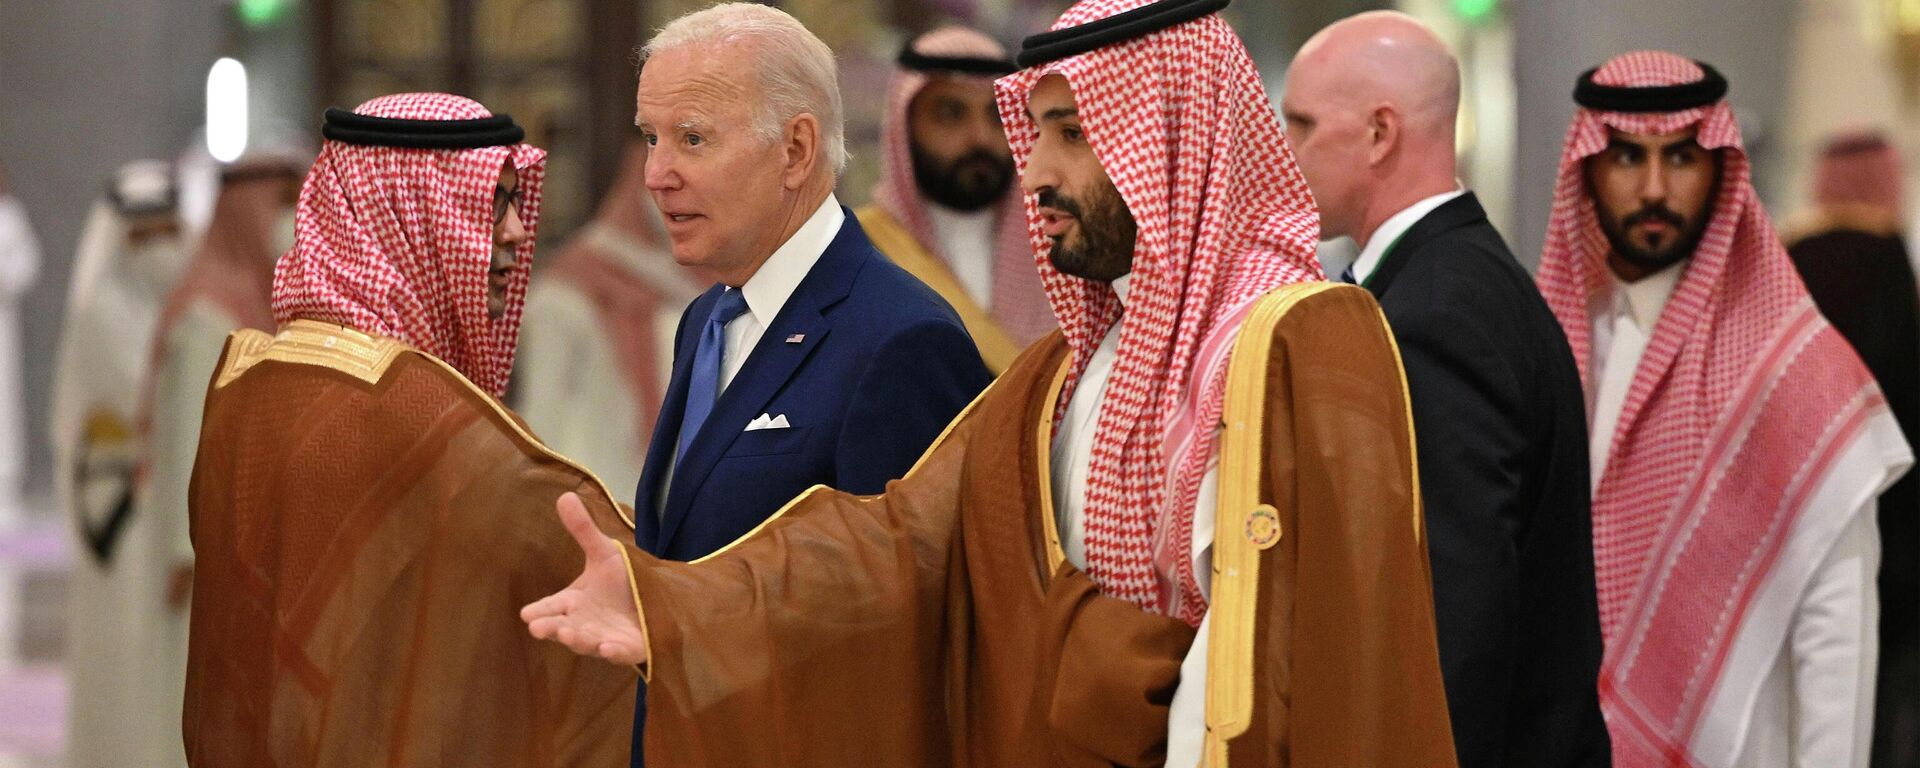 Tổng thống Hoa Kỳ Joe Biden và Thái tử Ả Rập Saudi Mohammed bin Salman tại một khách sạn ở Jeddah, Ả Rập Saudi, ngày thứ Bảy 16/7/2022 - Sputnik Việt Nam, 1920, 09.08.2022